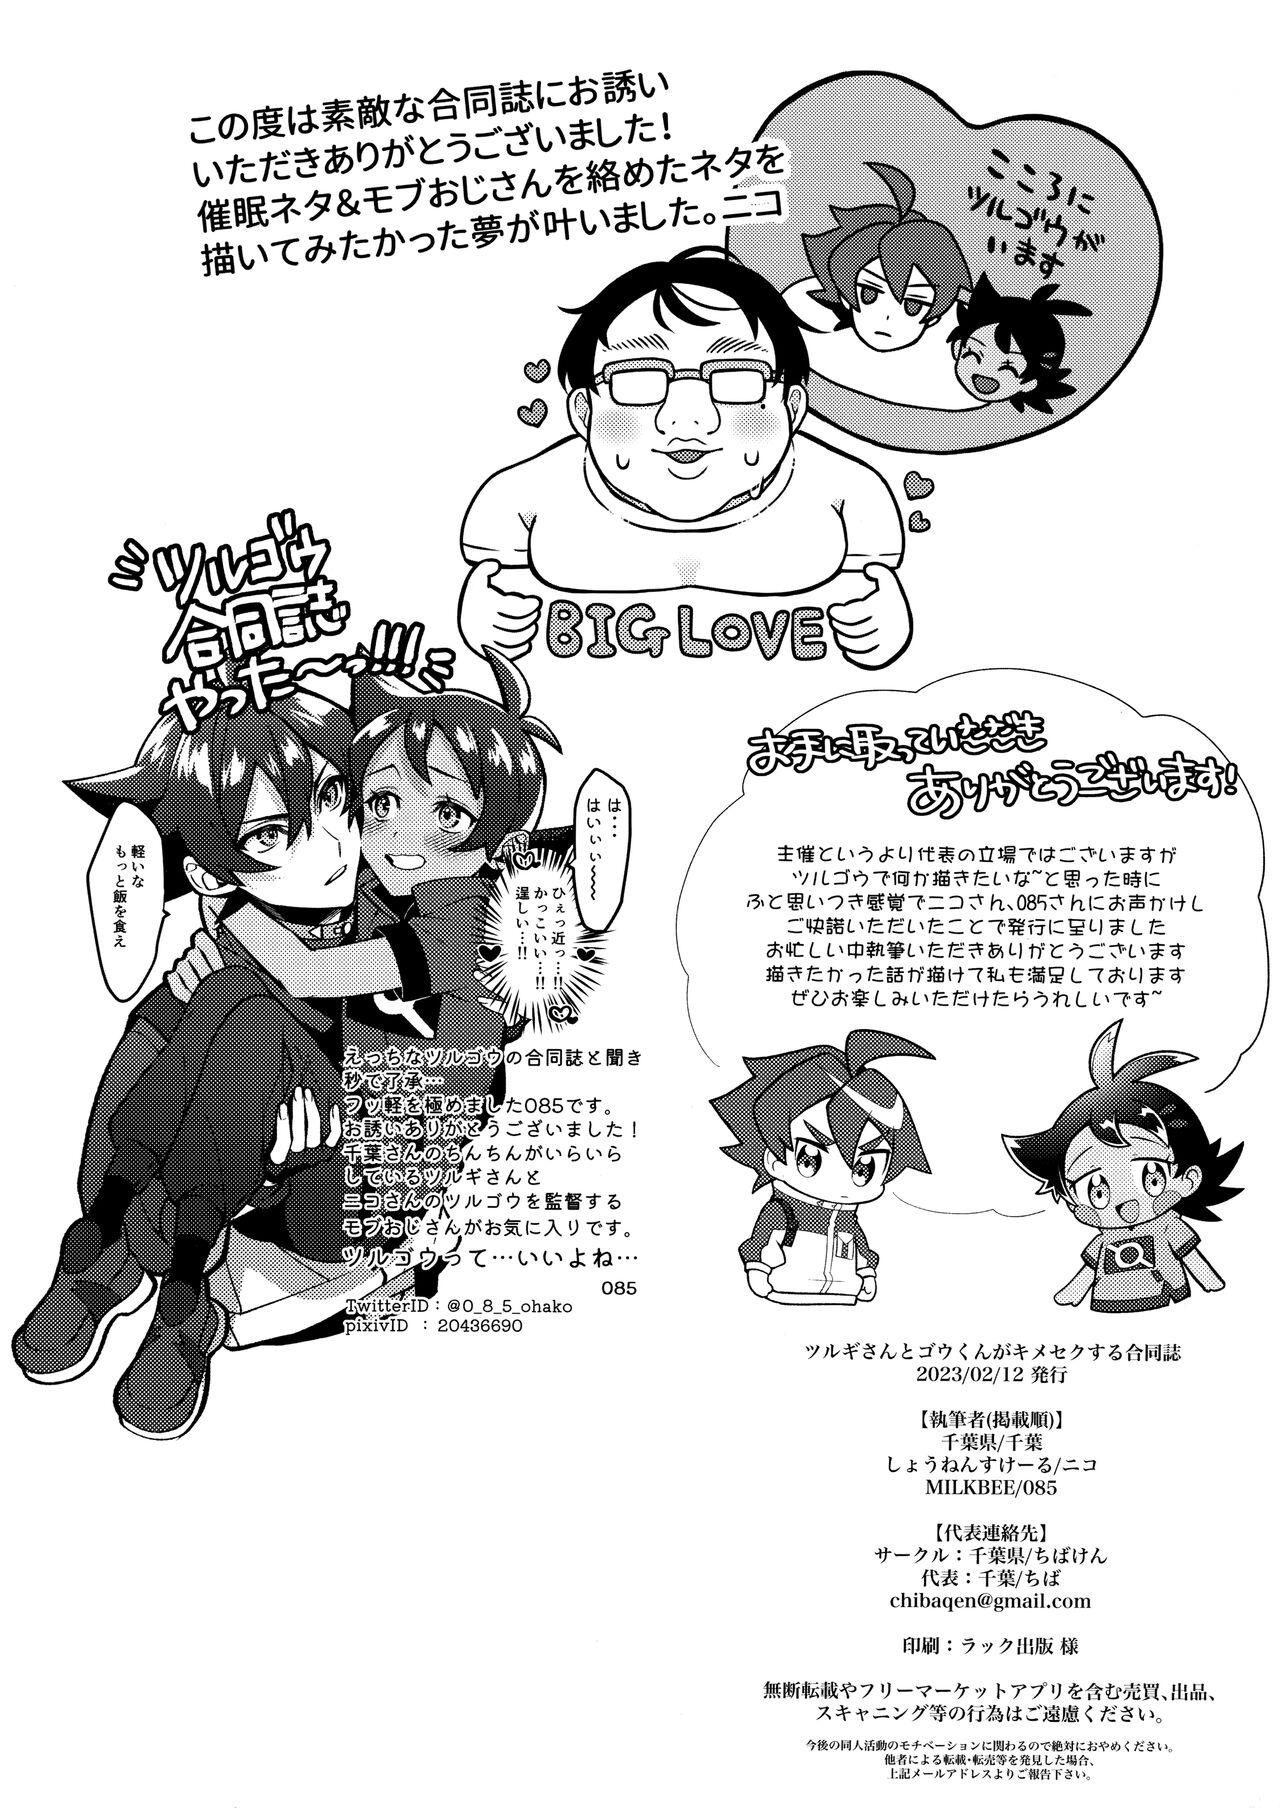 (ShotaFes12) [Chibaken, Shounen Scale, MILKBEE (Chiba, nico, 085)] Tsurugi-san to Goh-kun ga Kimeseku suru Goudoushi (Pokémon Journeys) 24